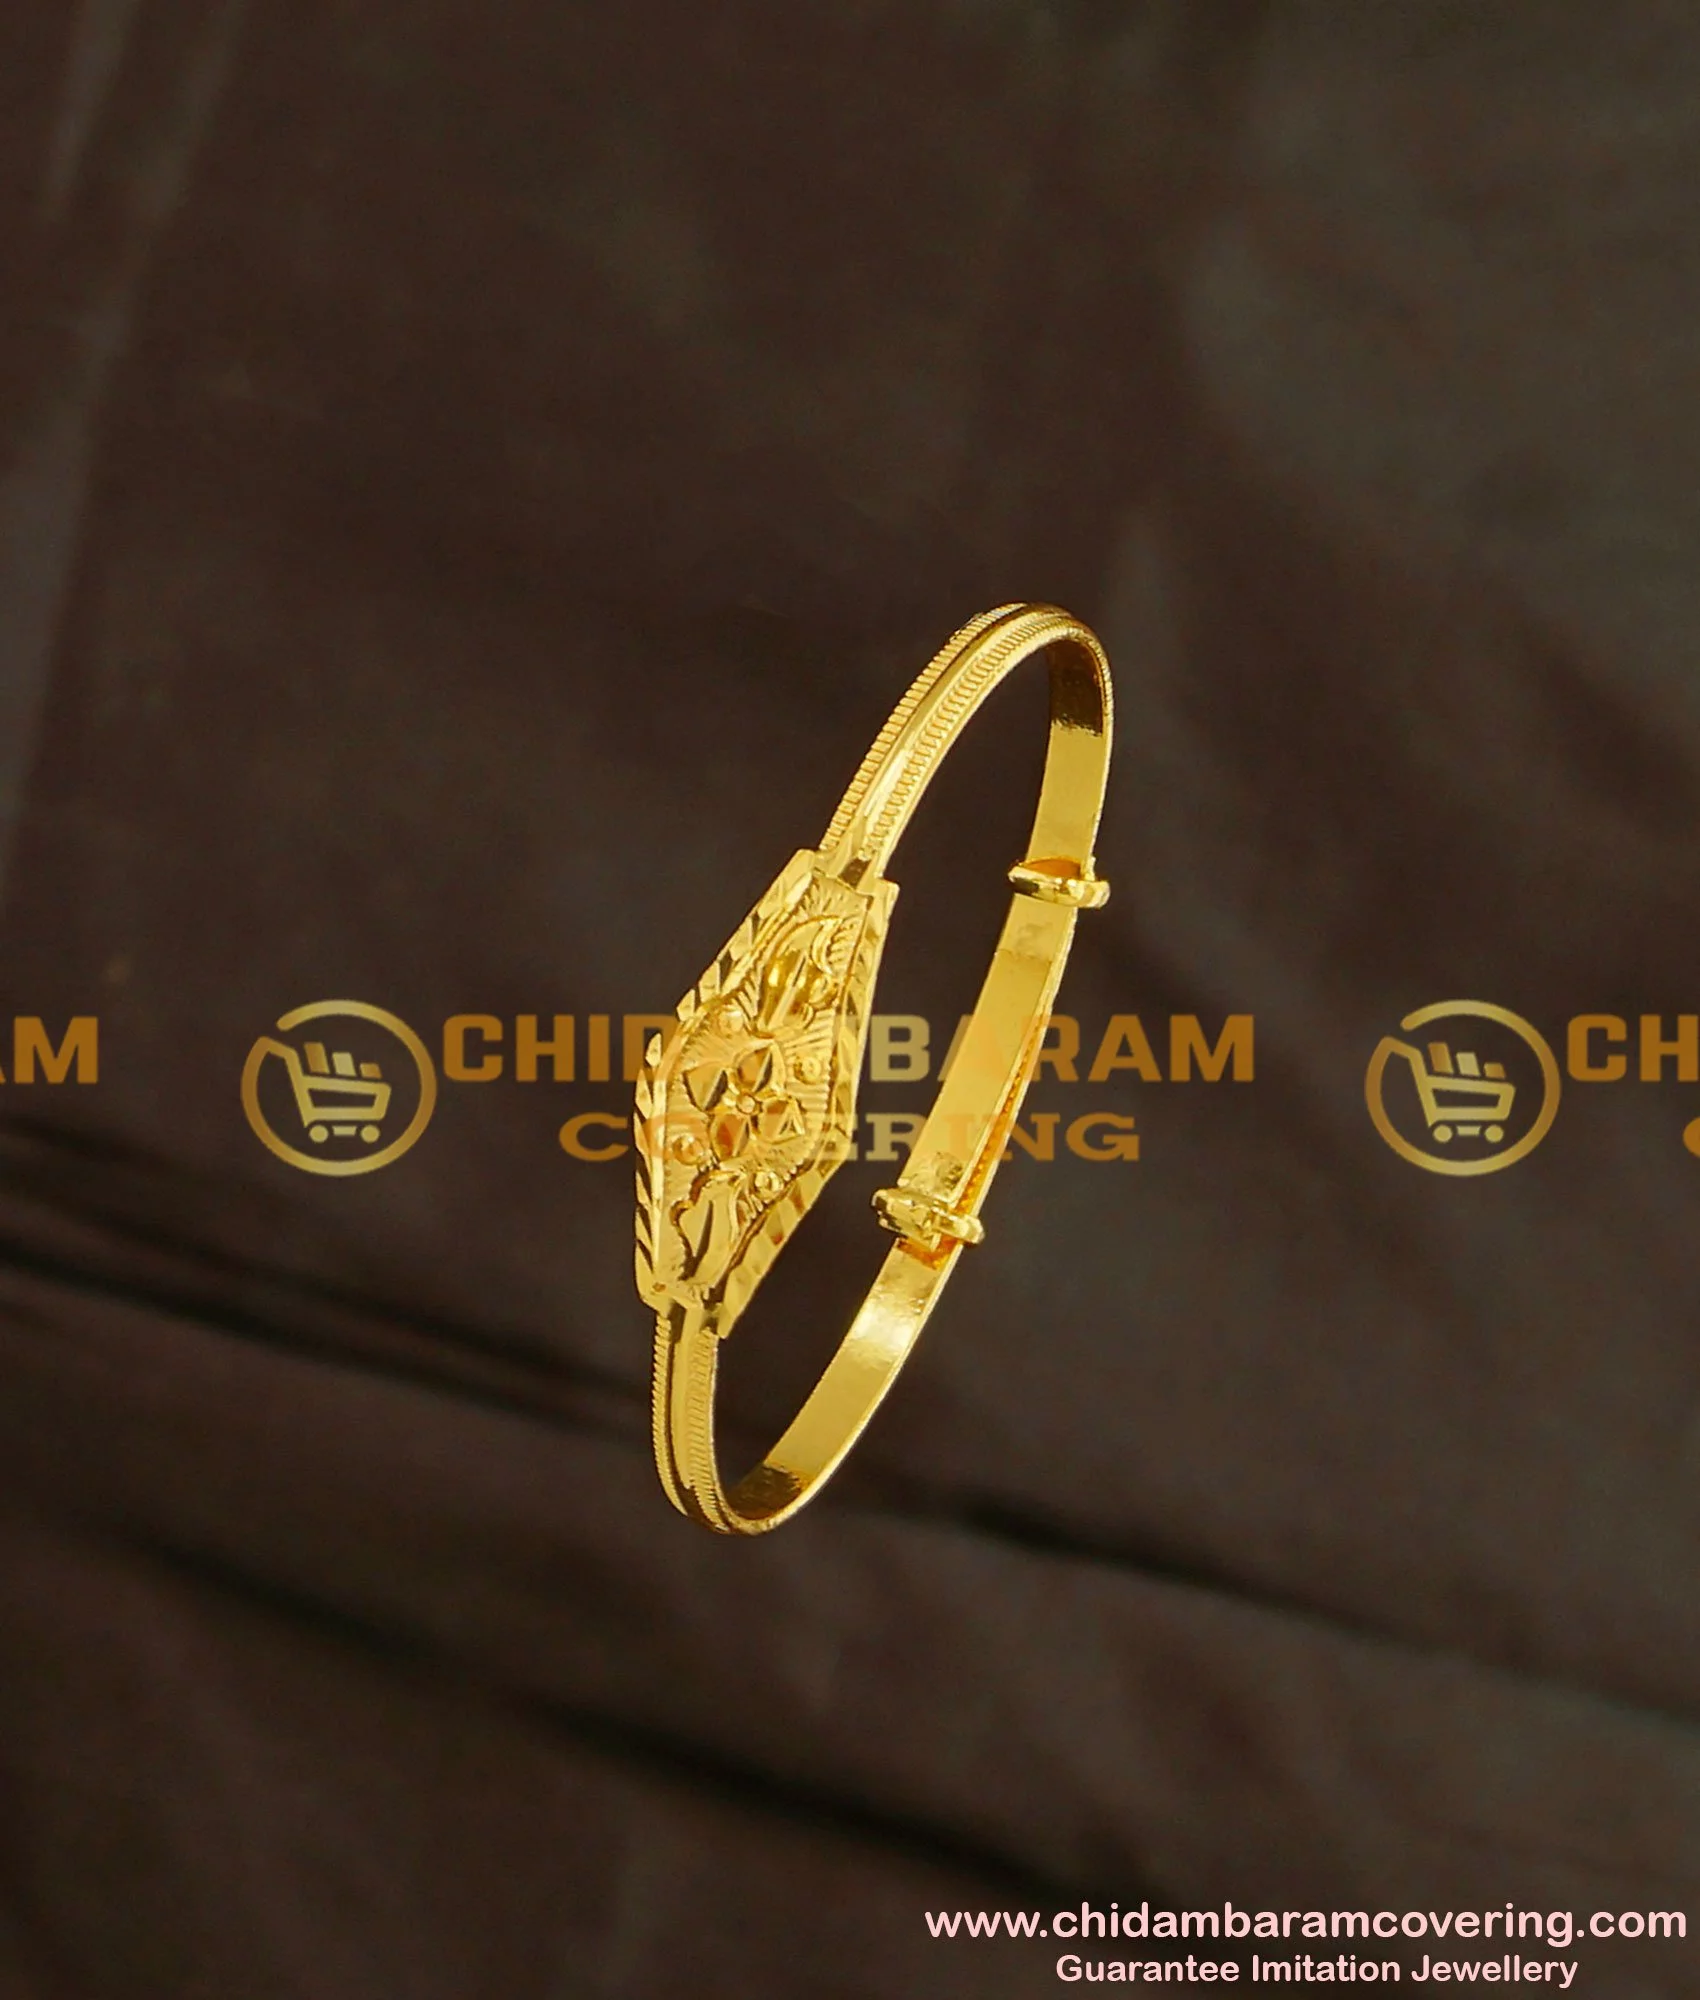 Unique gold bracelet design for women || Simple lite weight gold bracelet  || Daily wear gold braclet - YouTube